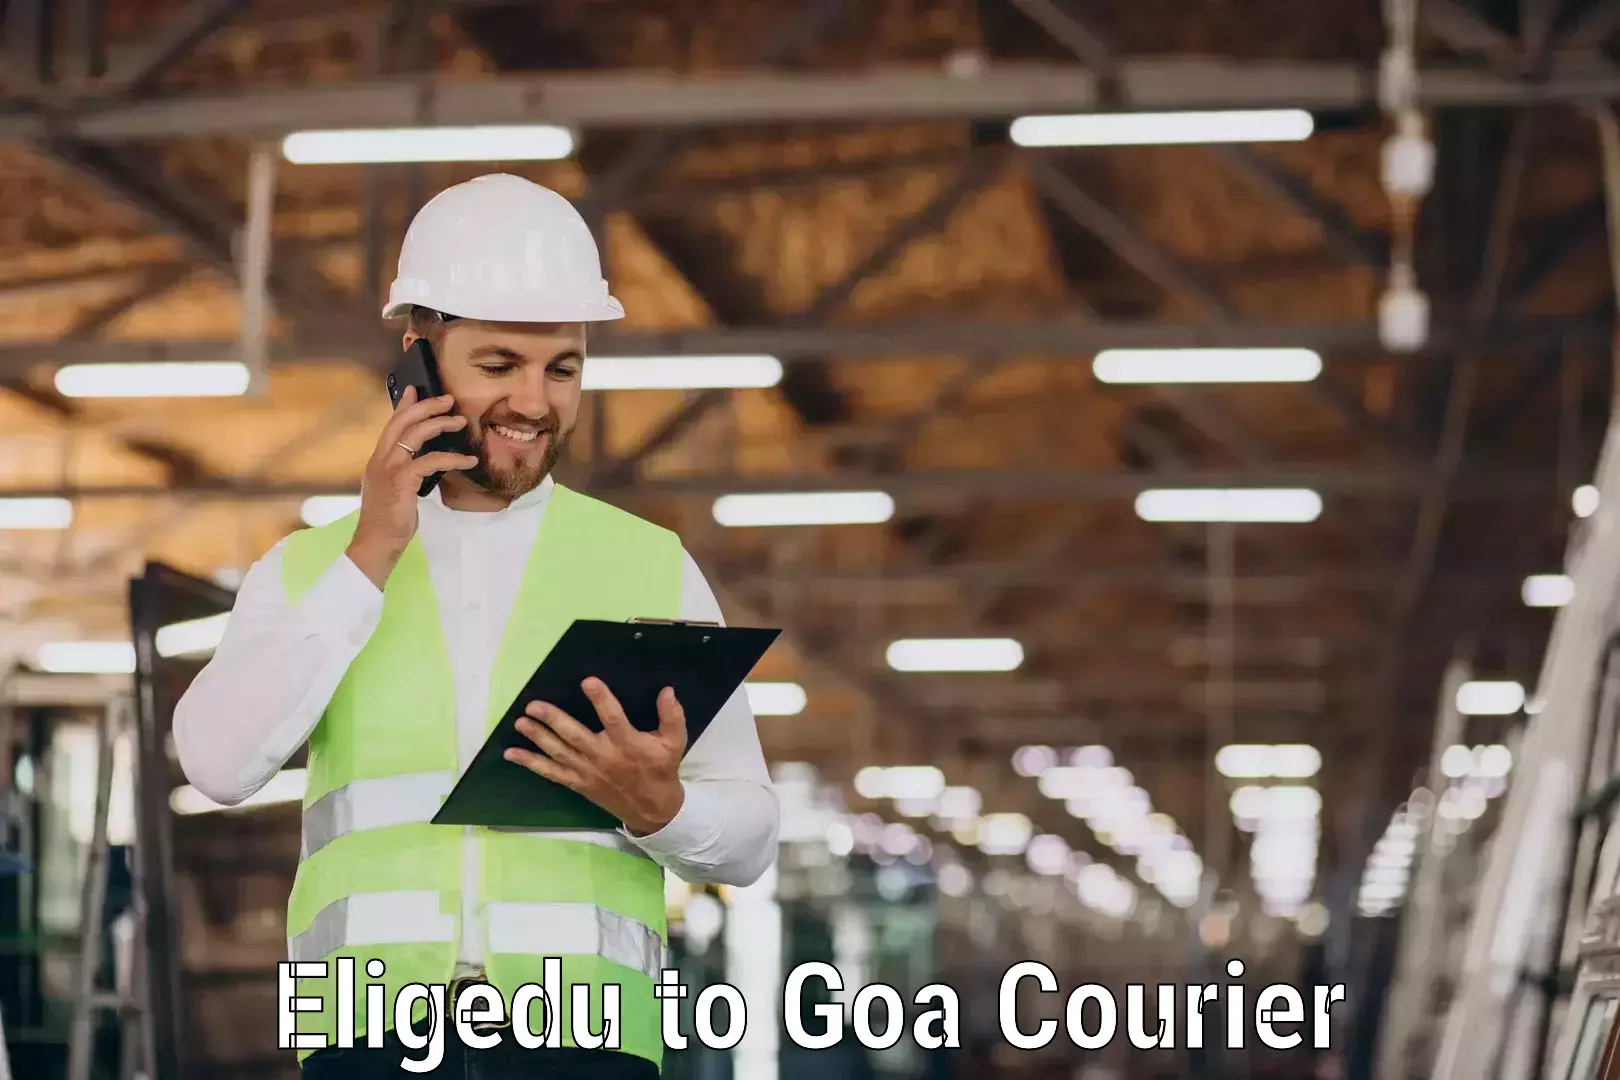 Nationwide shipping coverage Eligedu to Goa University